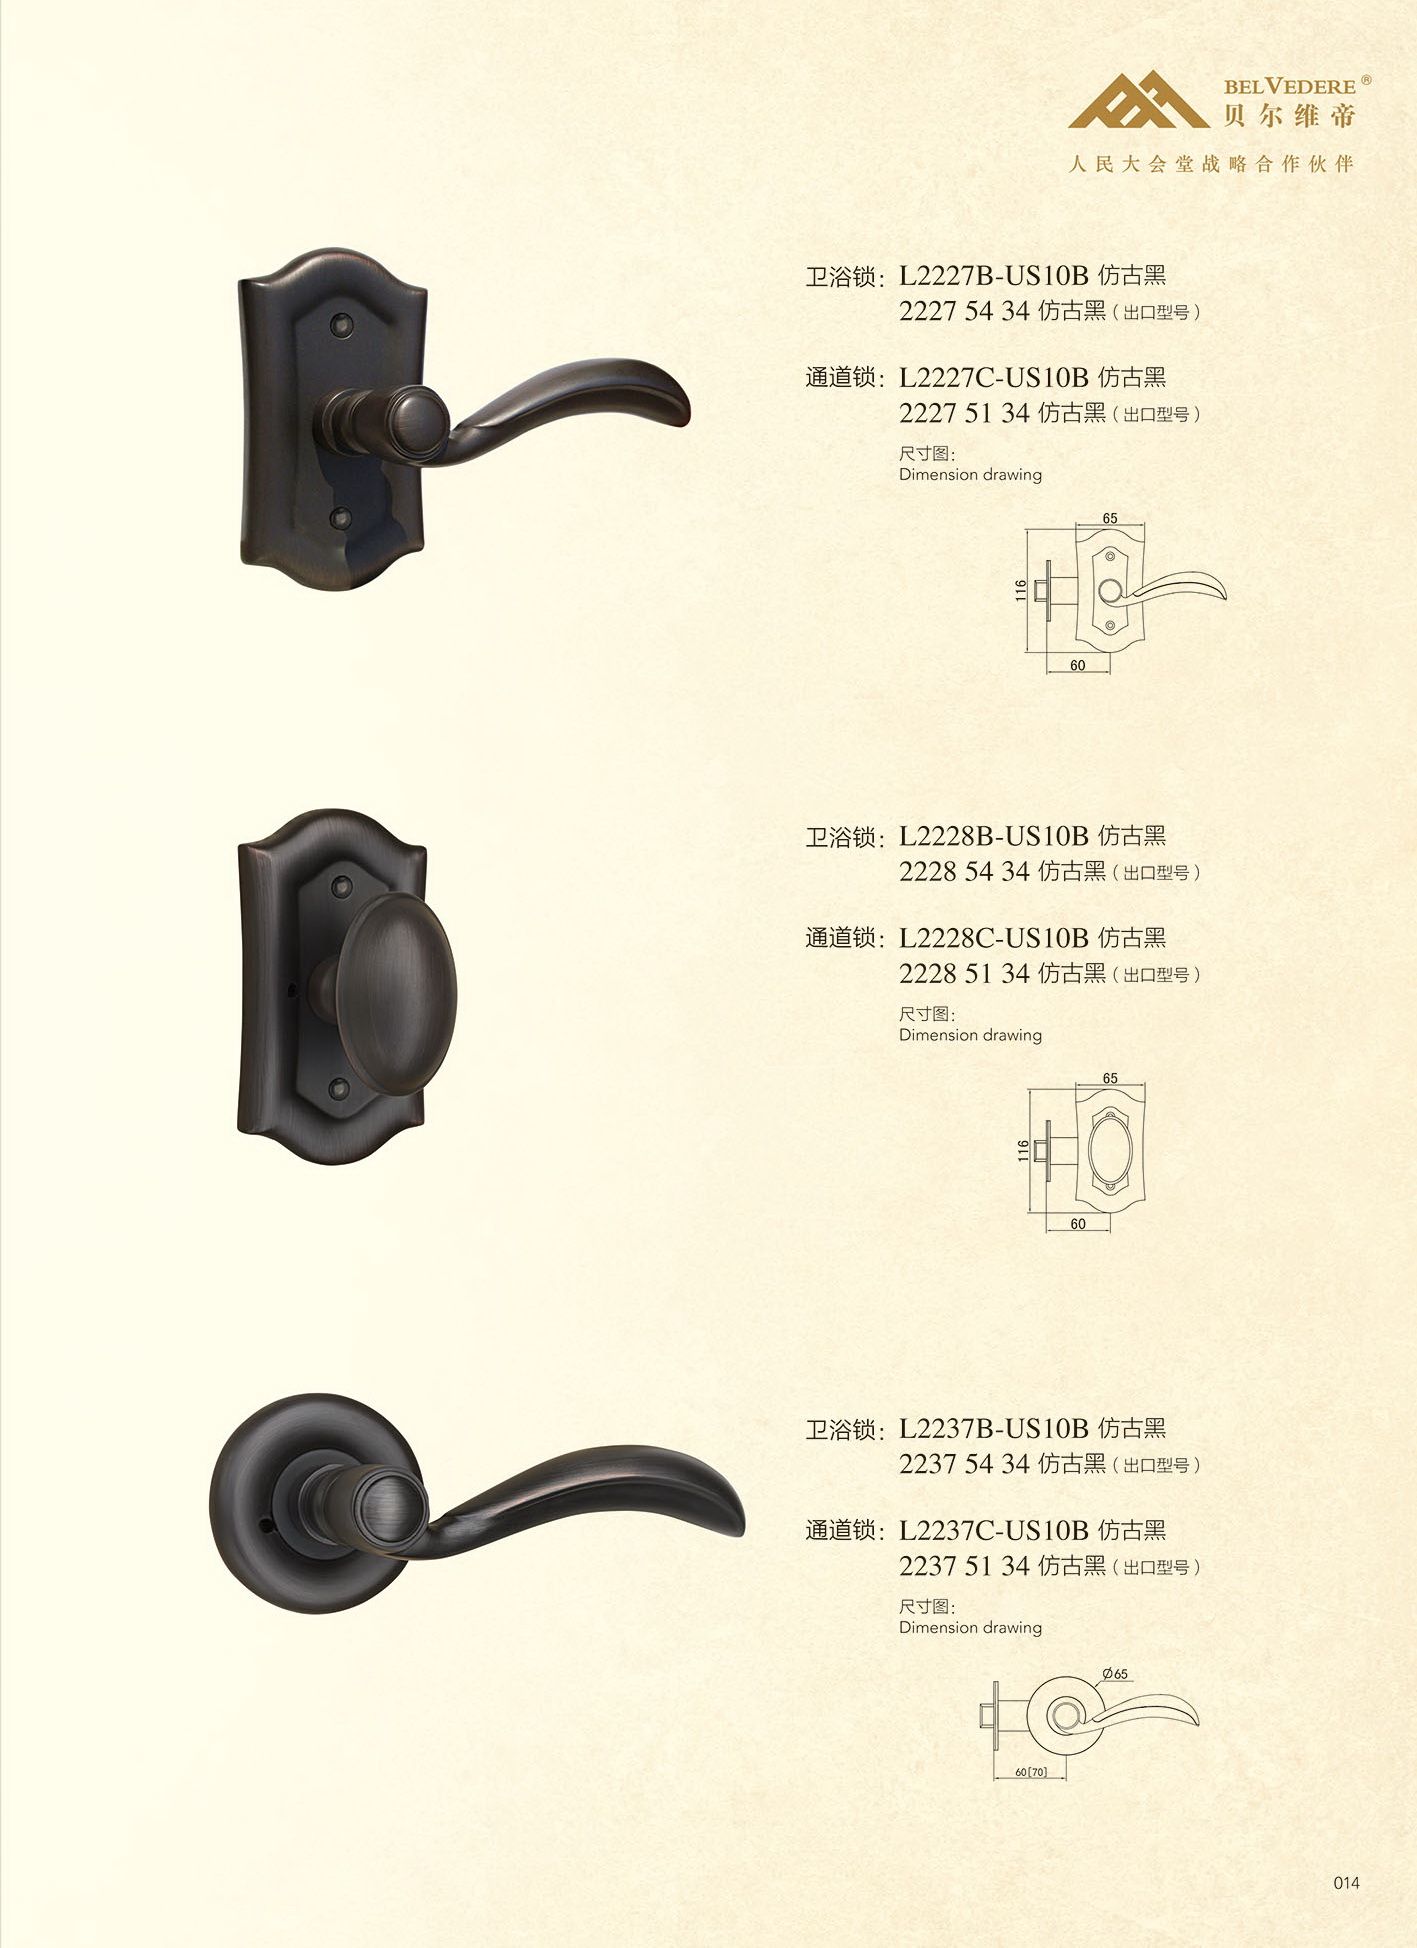 Luxury solid brass door lever and knobs